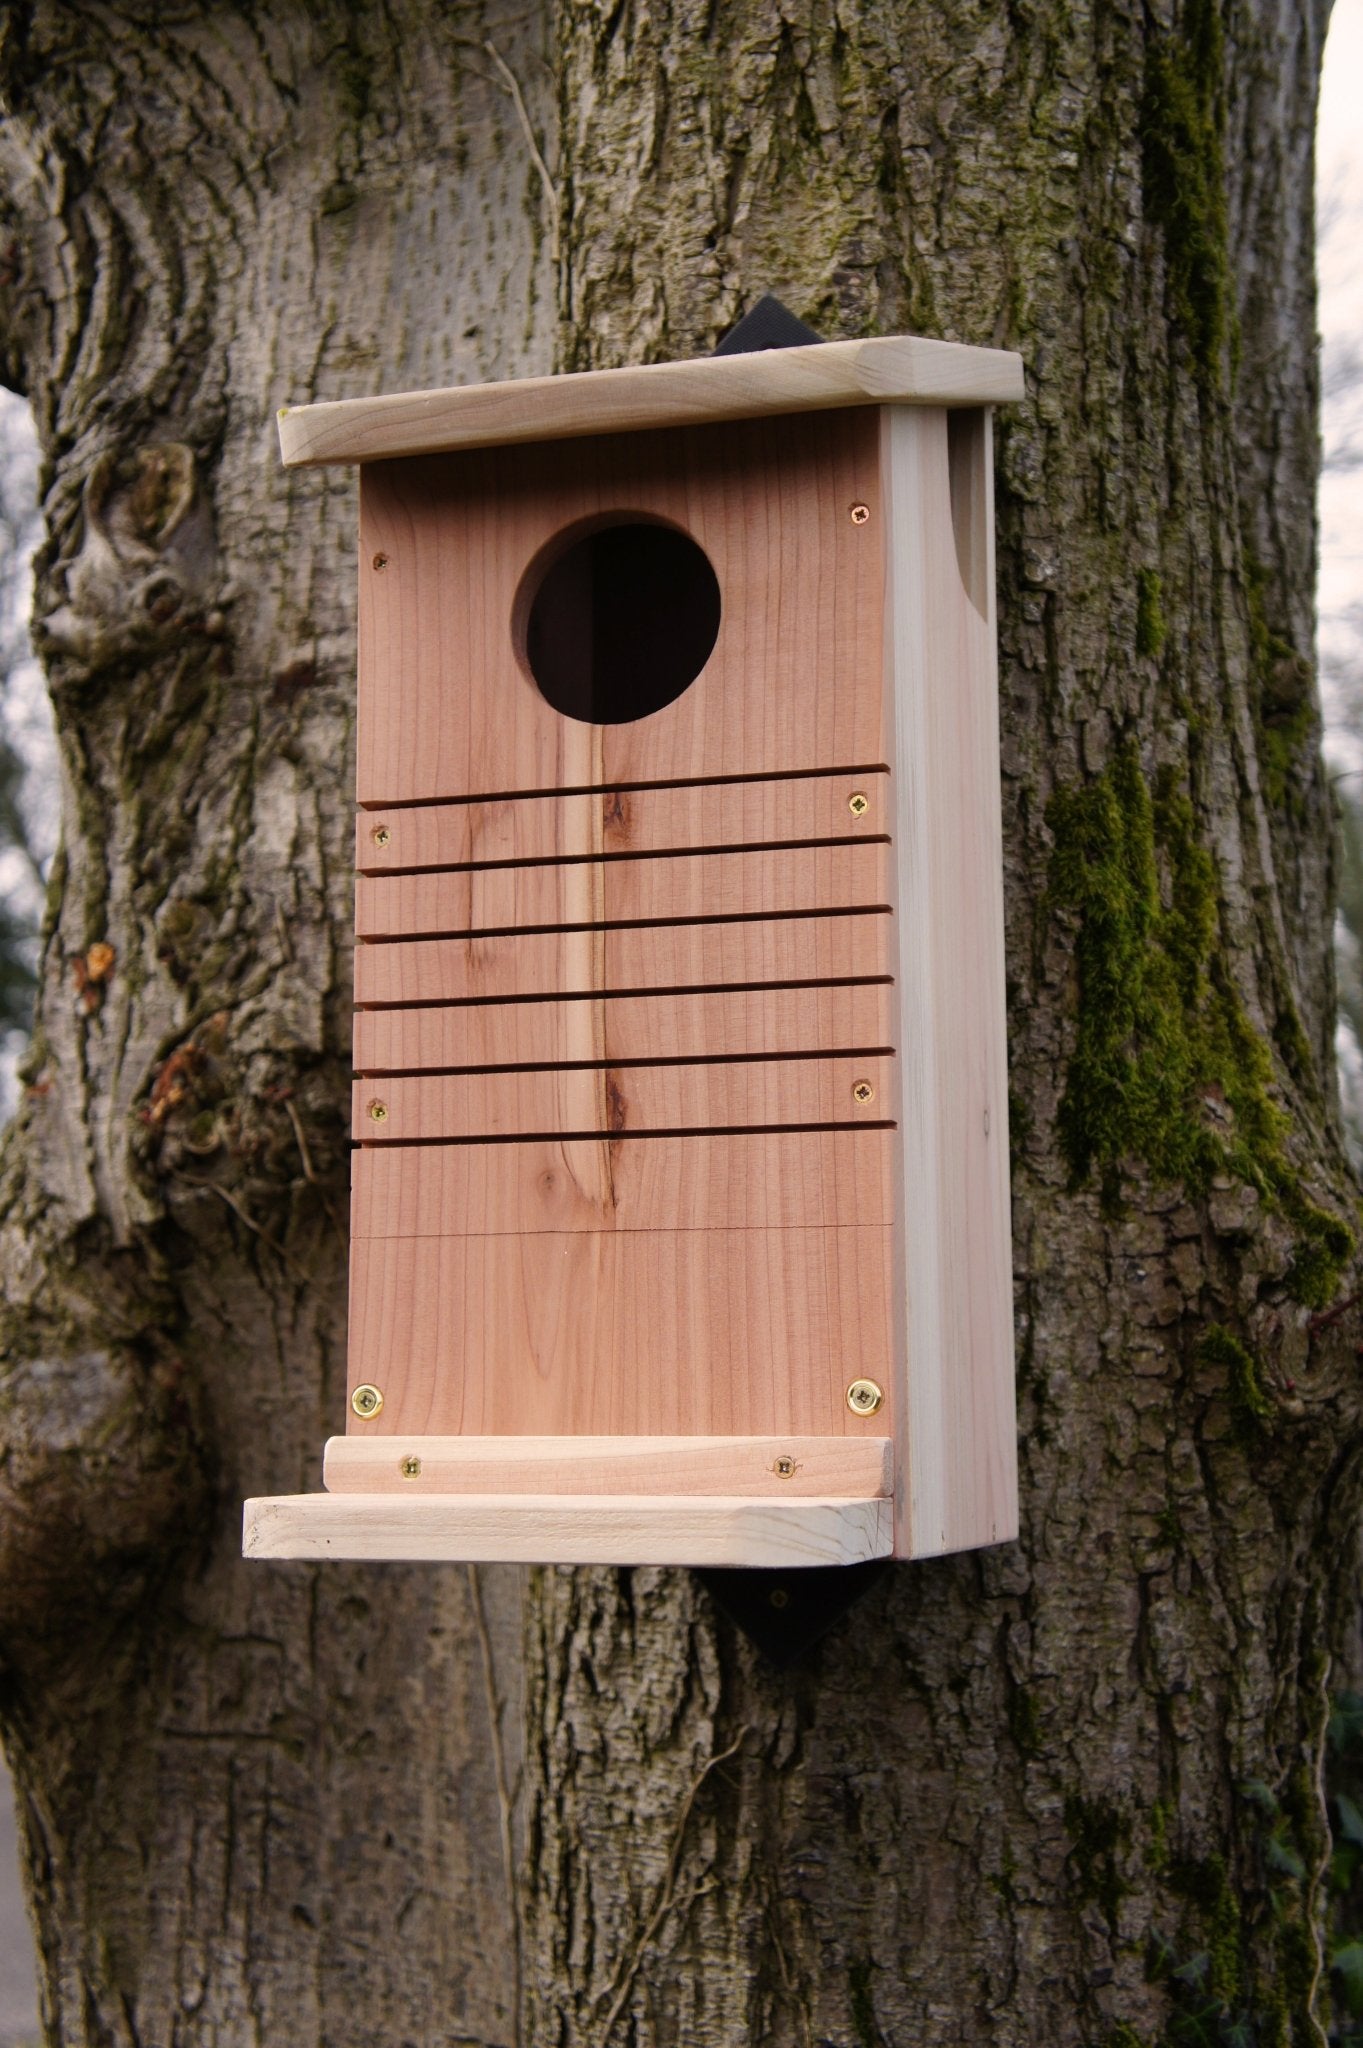 Red Squirrel Nest Box - The Irish Gardener Store